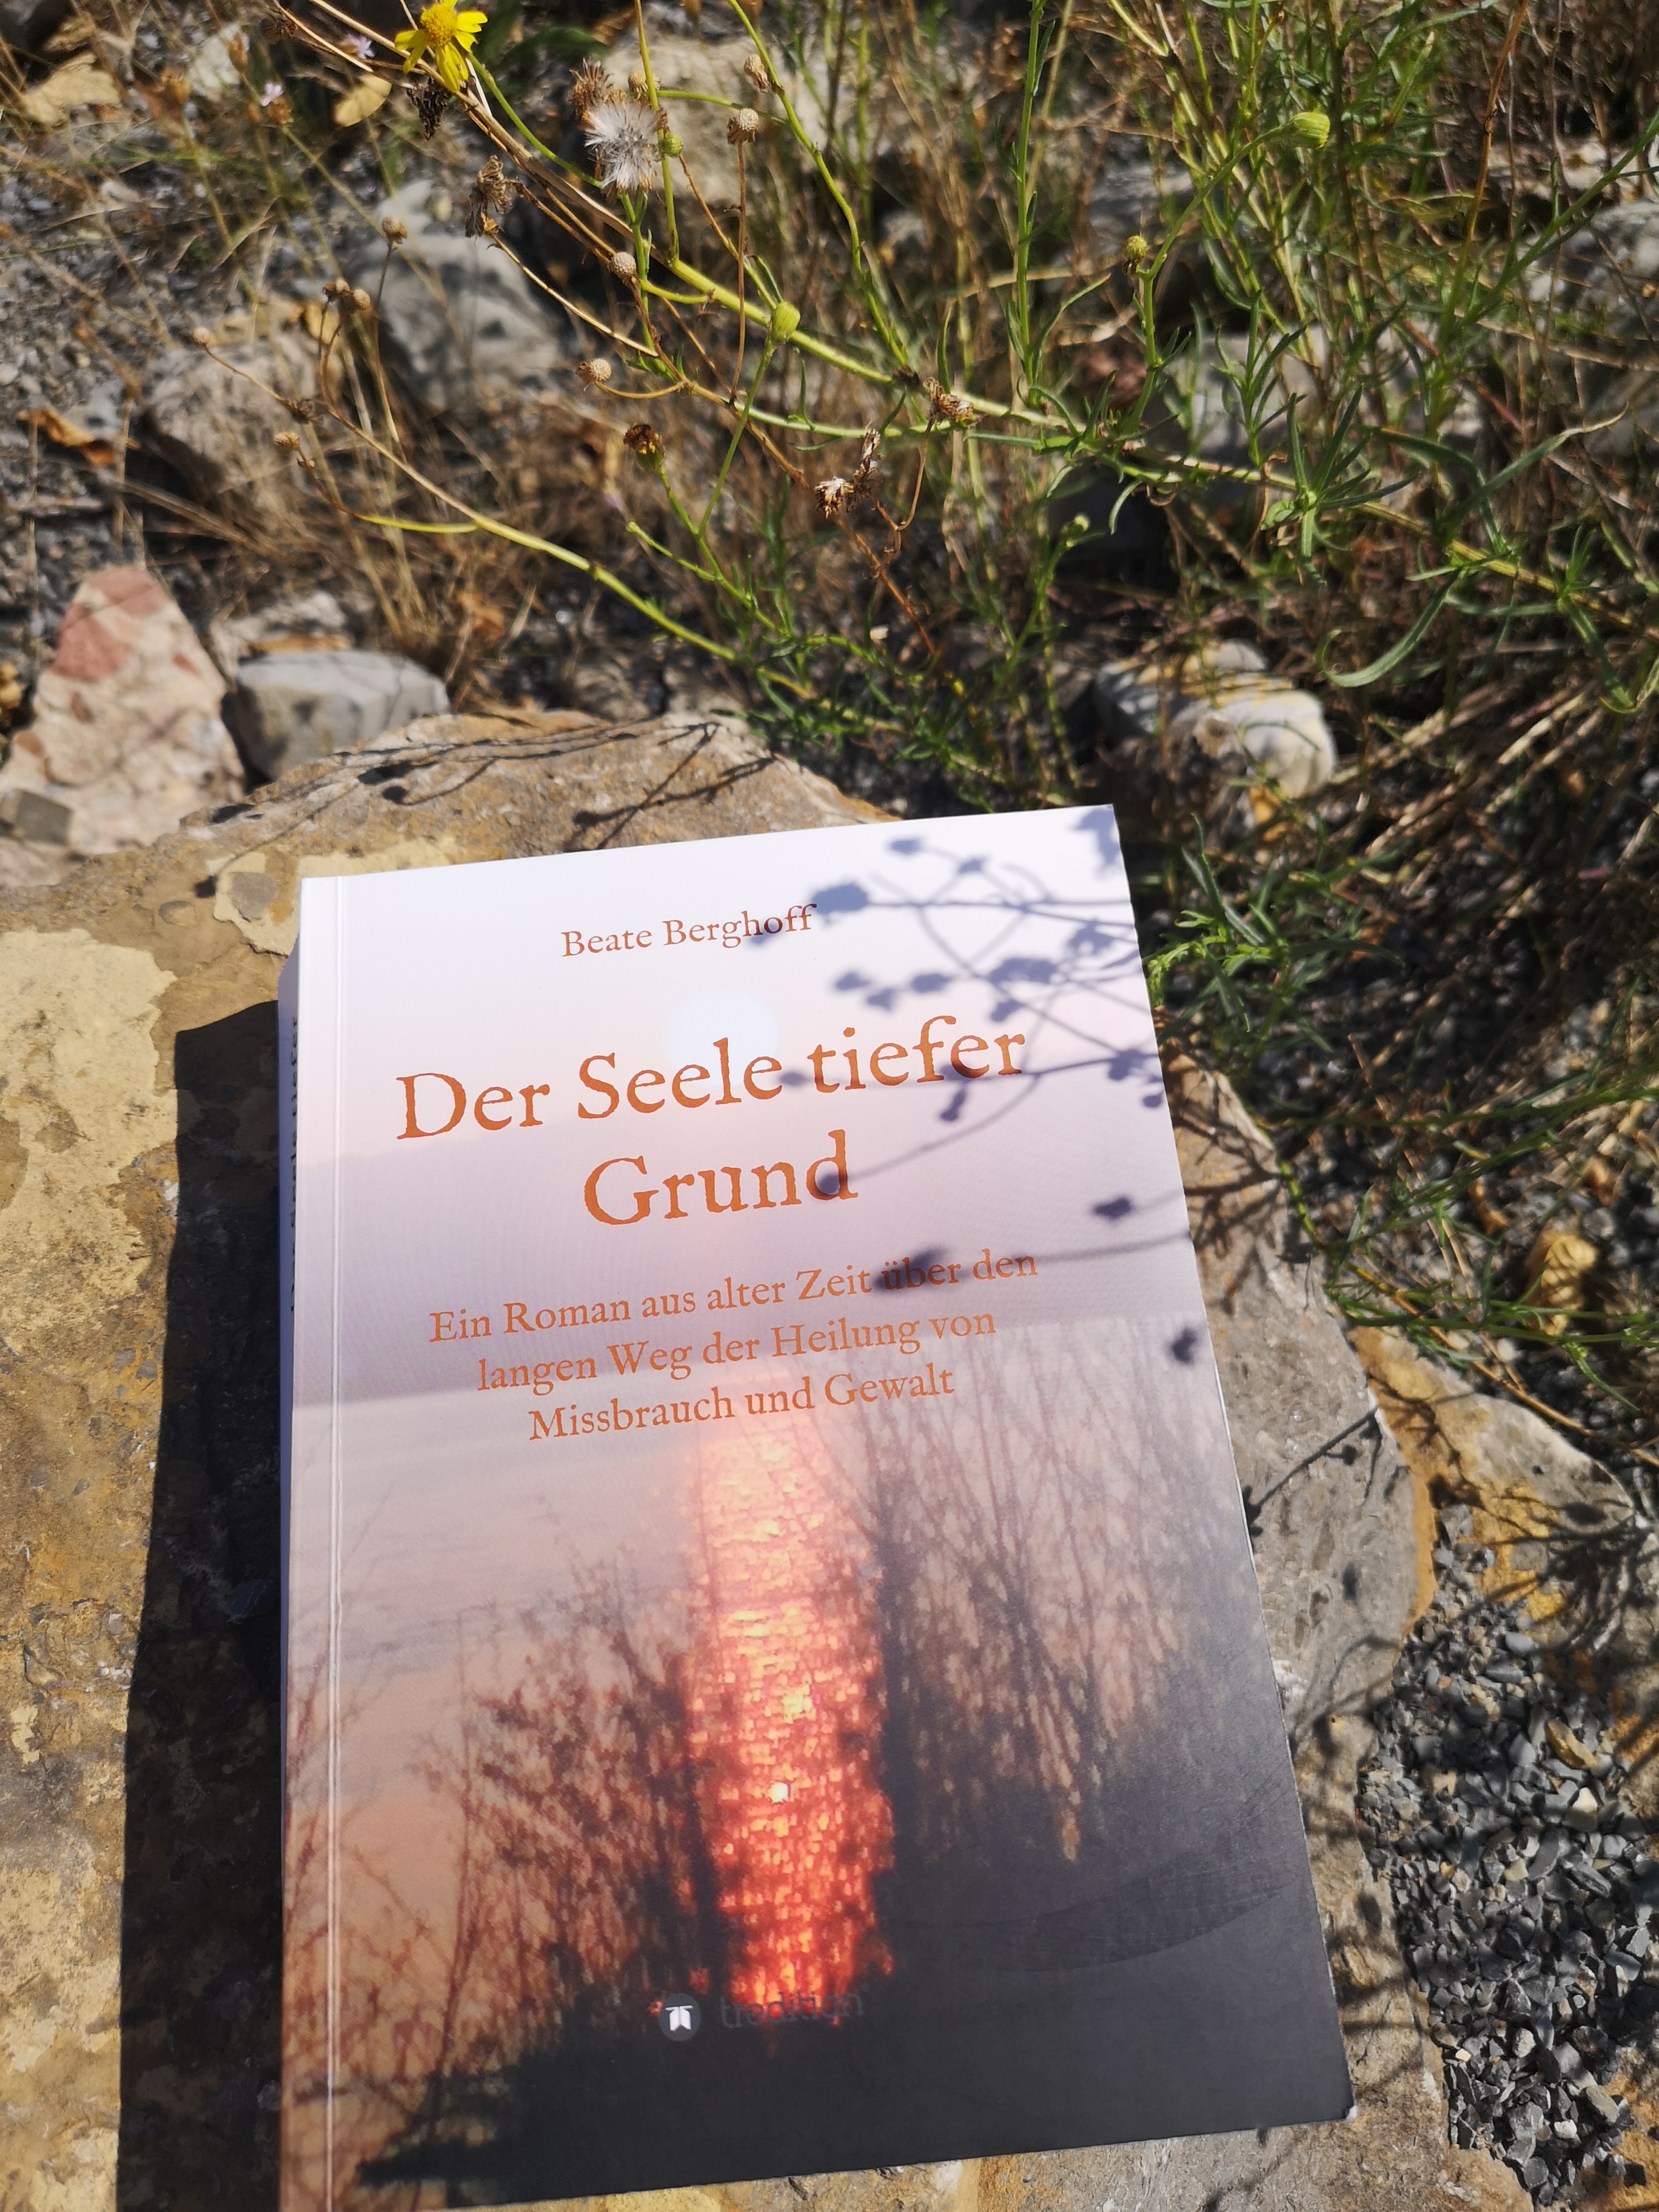 Buchcover "Der Seele tiefer Grund"
Privatarchiv Beate Berghoff